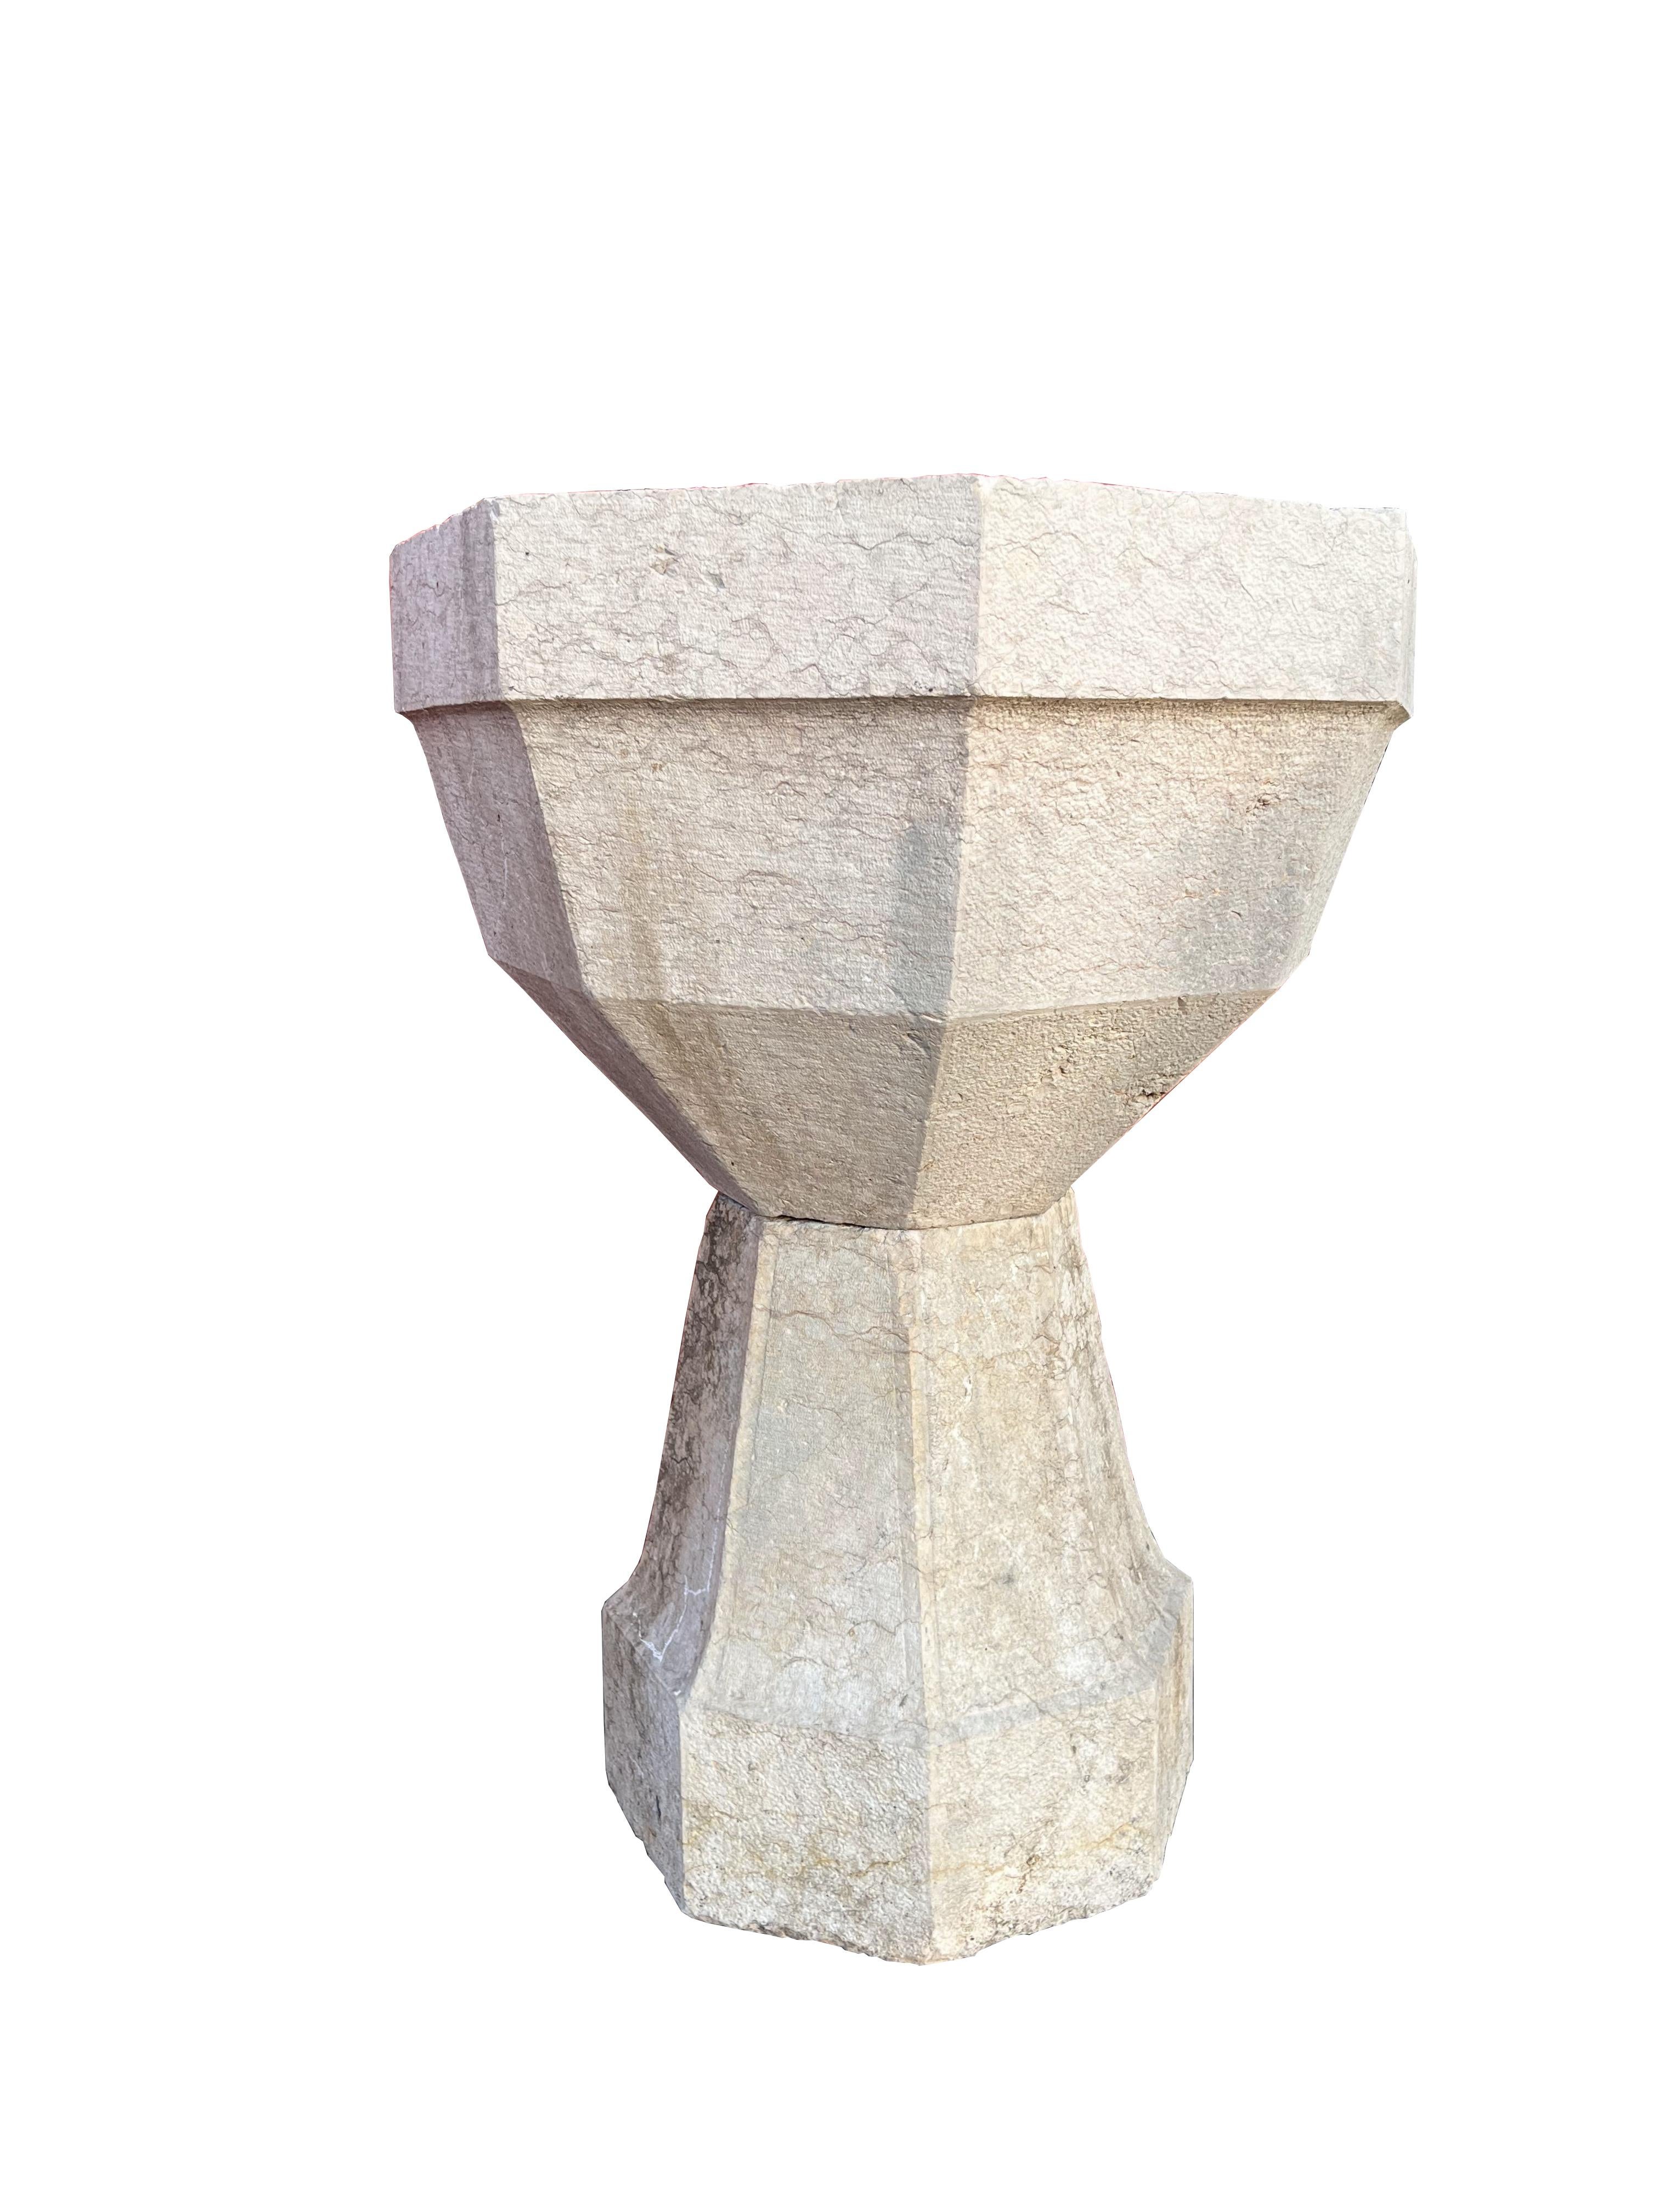 Dieses Stück ist ein italienischer antiker achteckiger Marmorbrunnen, der direkt aus Venetien, Italien, importiert wurde und einen wunderbaren Charme besitzt, der seinem Alter entspricht. Sie ist sowohl wetter- als auch sonnenbeständig und wird